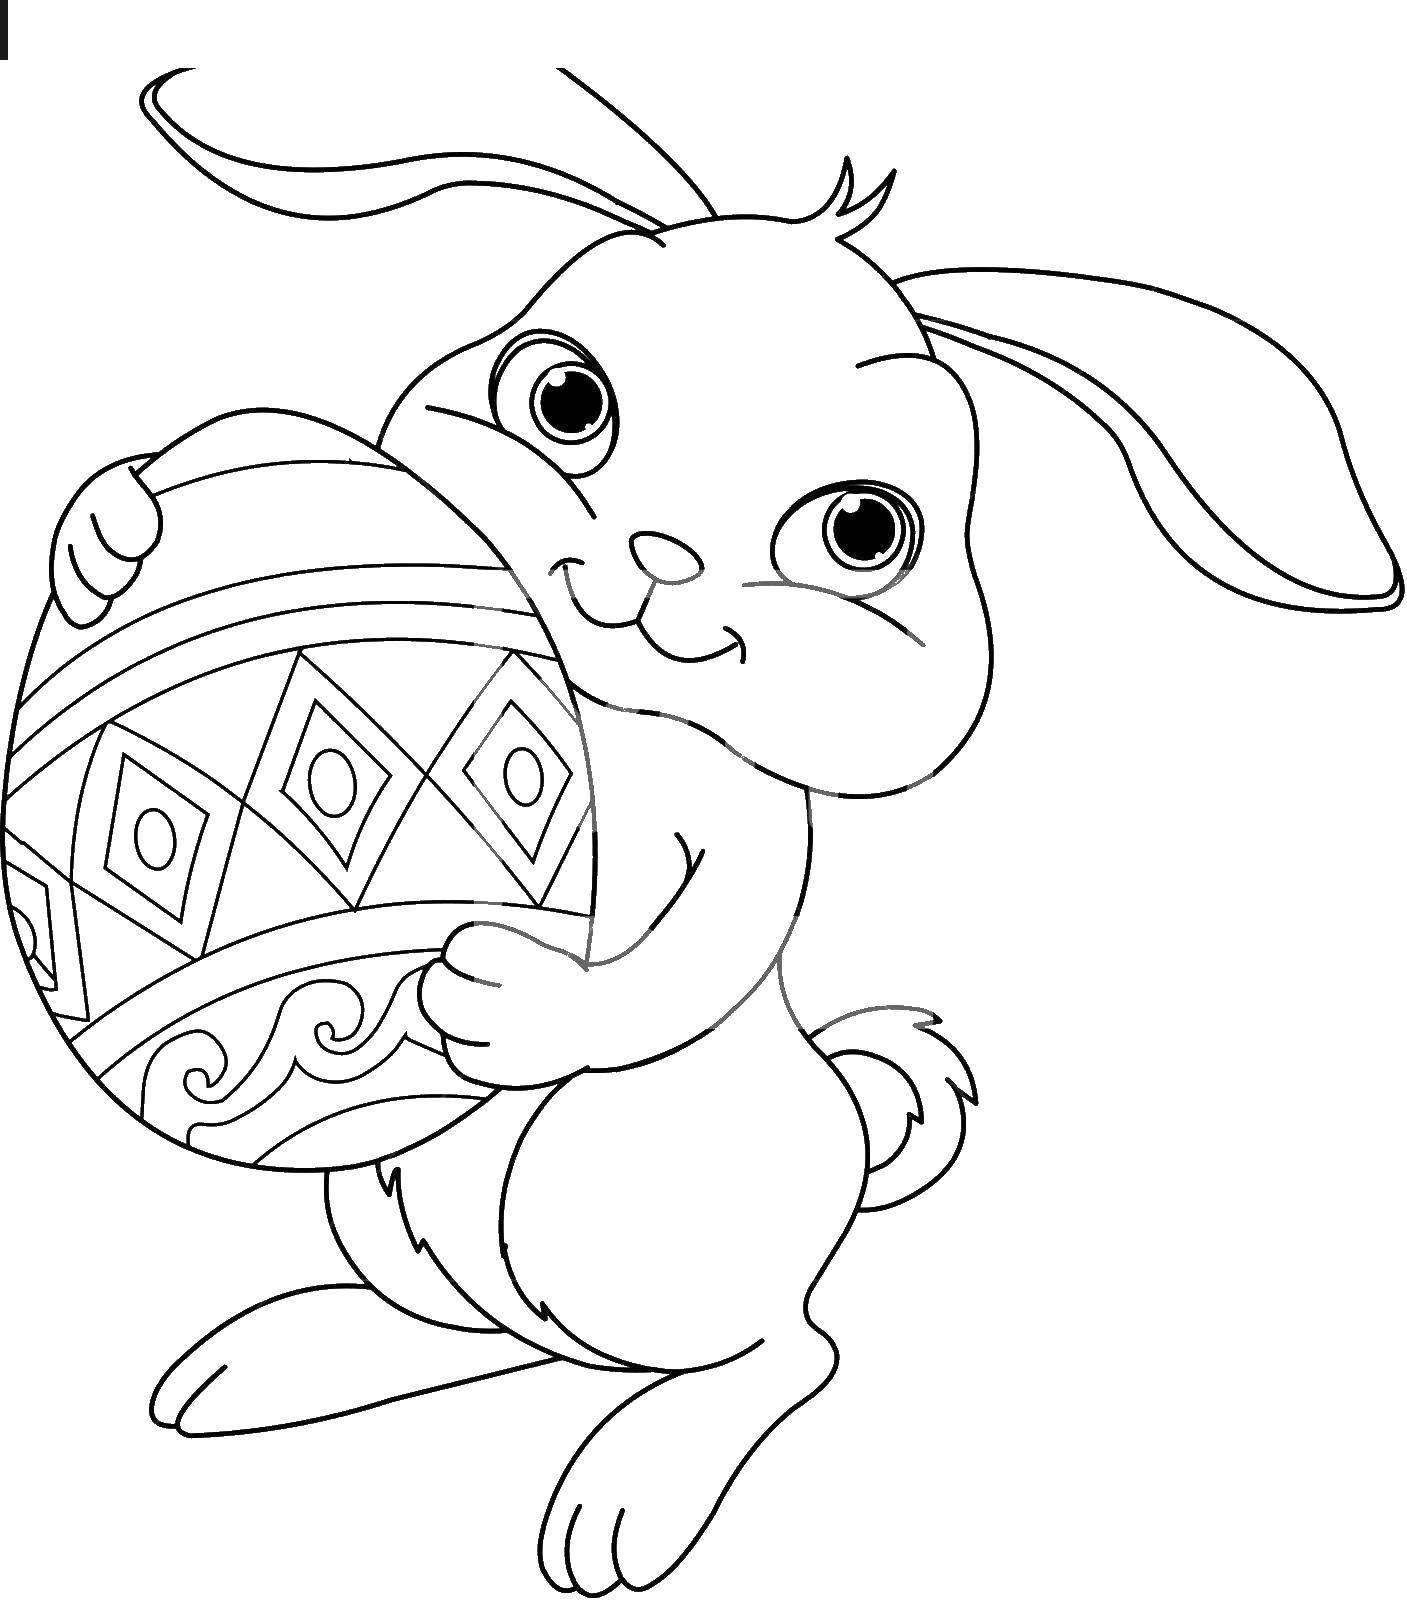 Название: Раскраска Пасхальный кролик. Категория: пасха. Теги: Пасха, яйца, узоры, кролик.